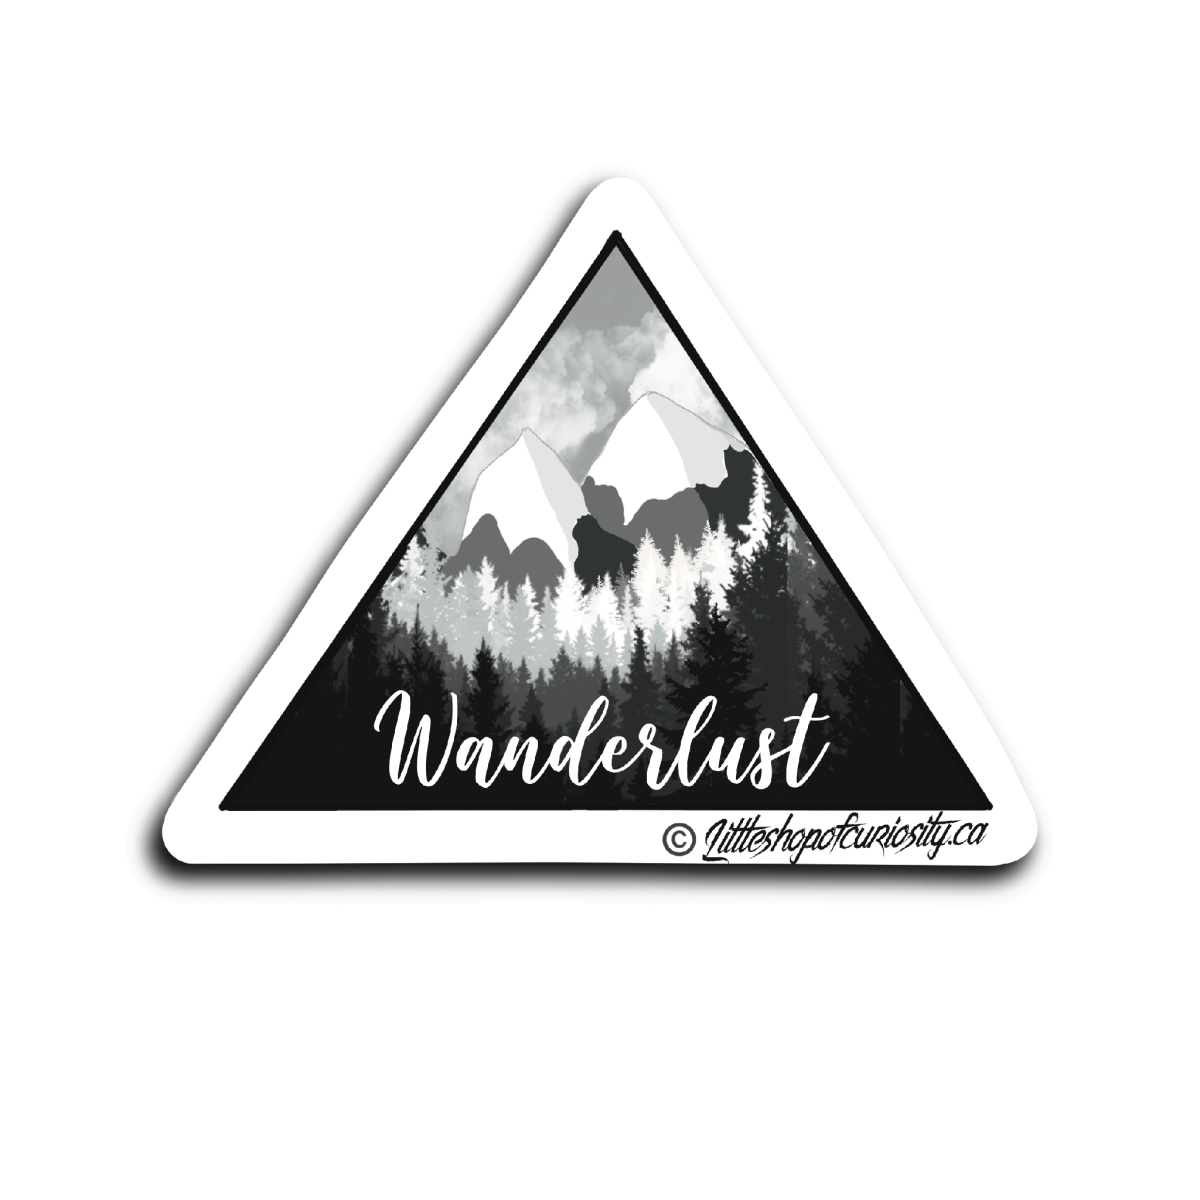 Wanderlust Sticker - Black & White Sticker - Little Shop of Curiosity